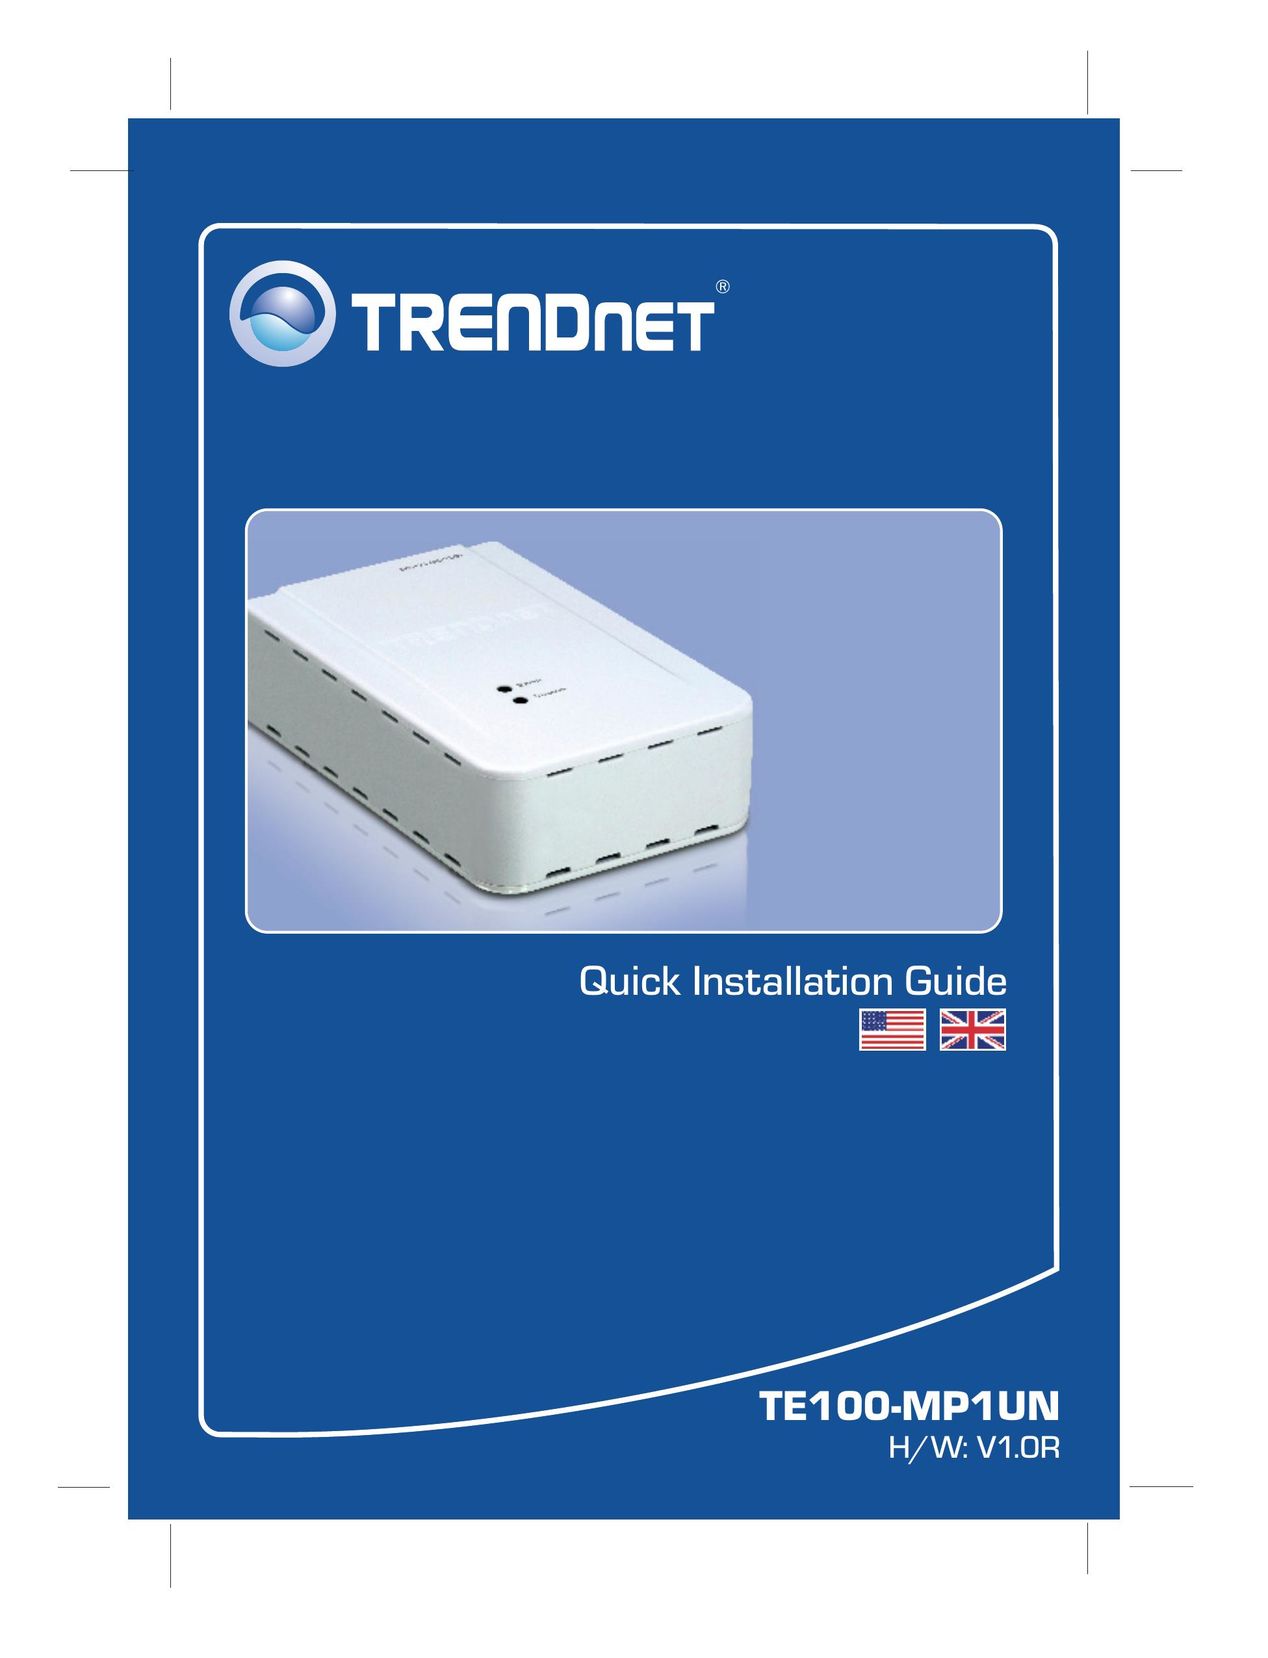 TRENDnet Multi-Function Printer Server User Manual